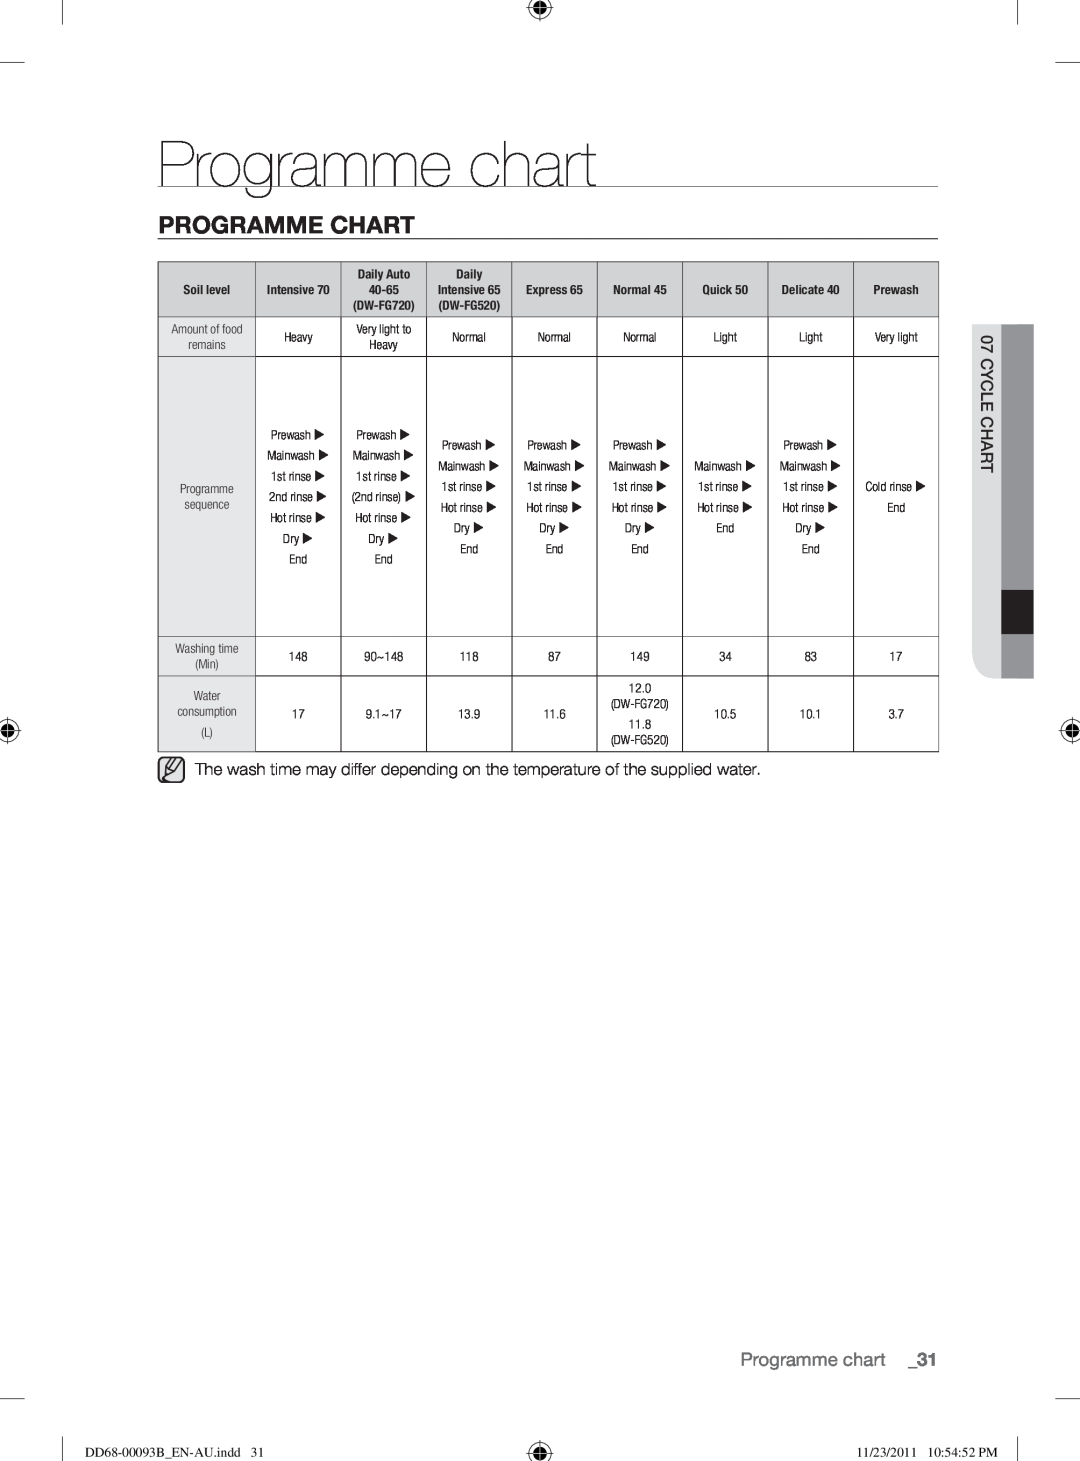 Samsung DW-FG520, DW-FG720 Programme chart, Programme Chart, Daily Auto, 13.9, 11.6, 10.5, 10.1, DD68-00093B EN-AU.indd31 